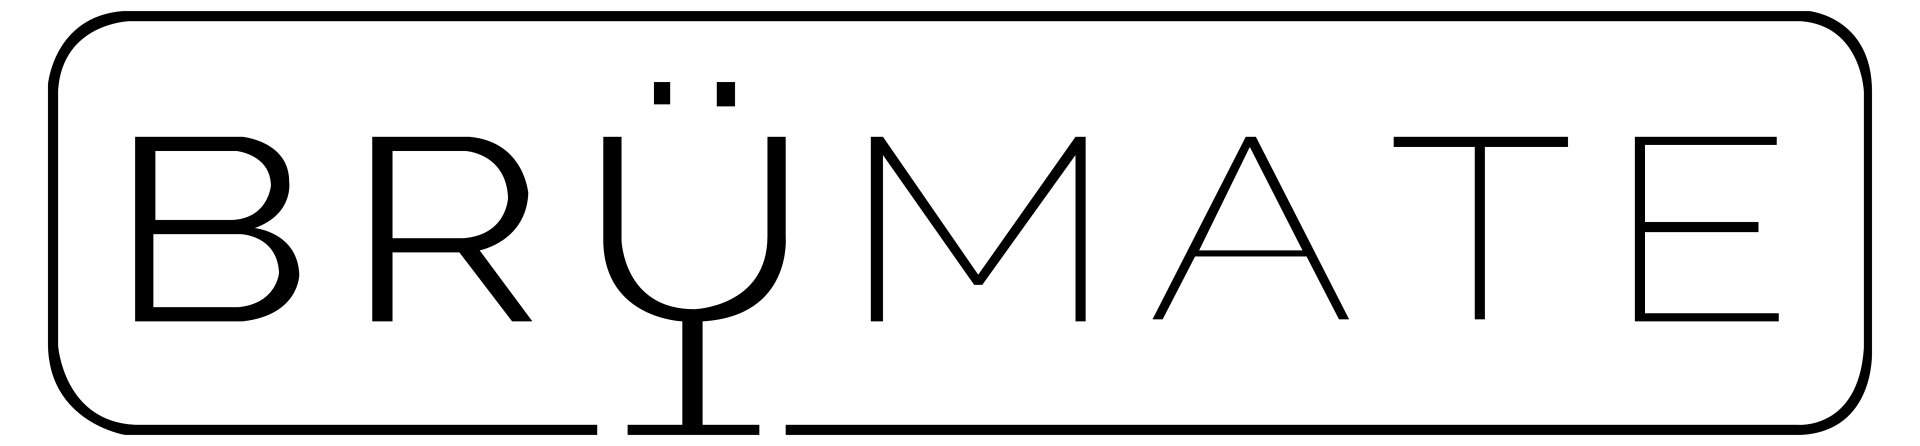 Brumate Logo